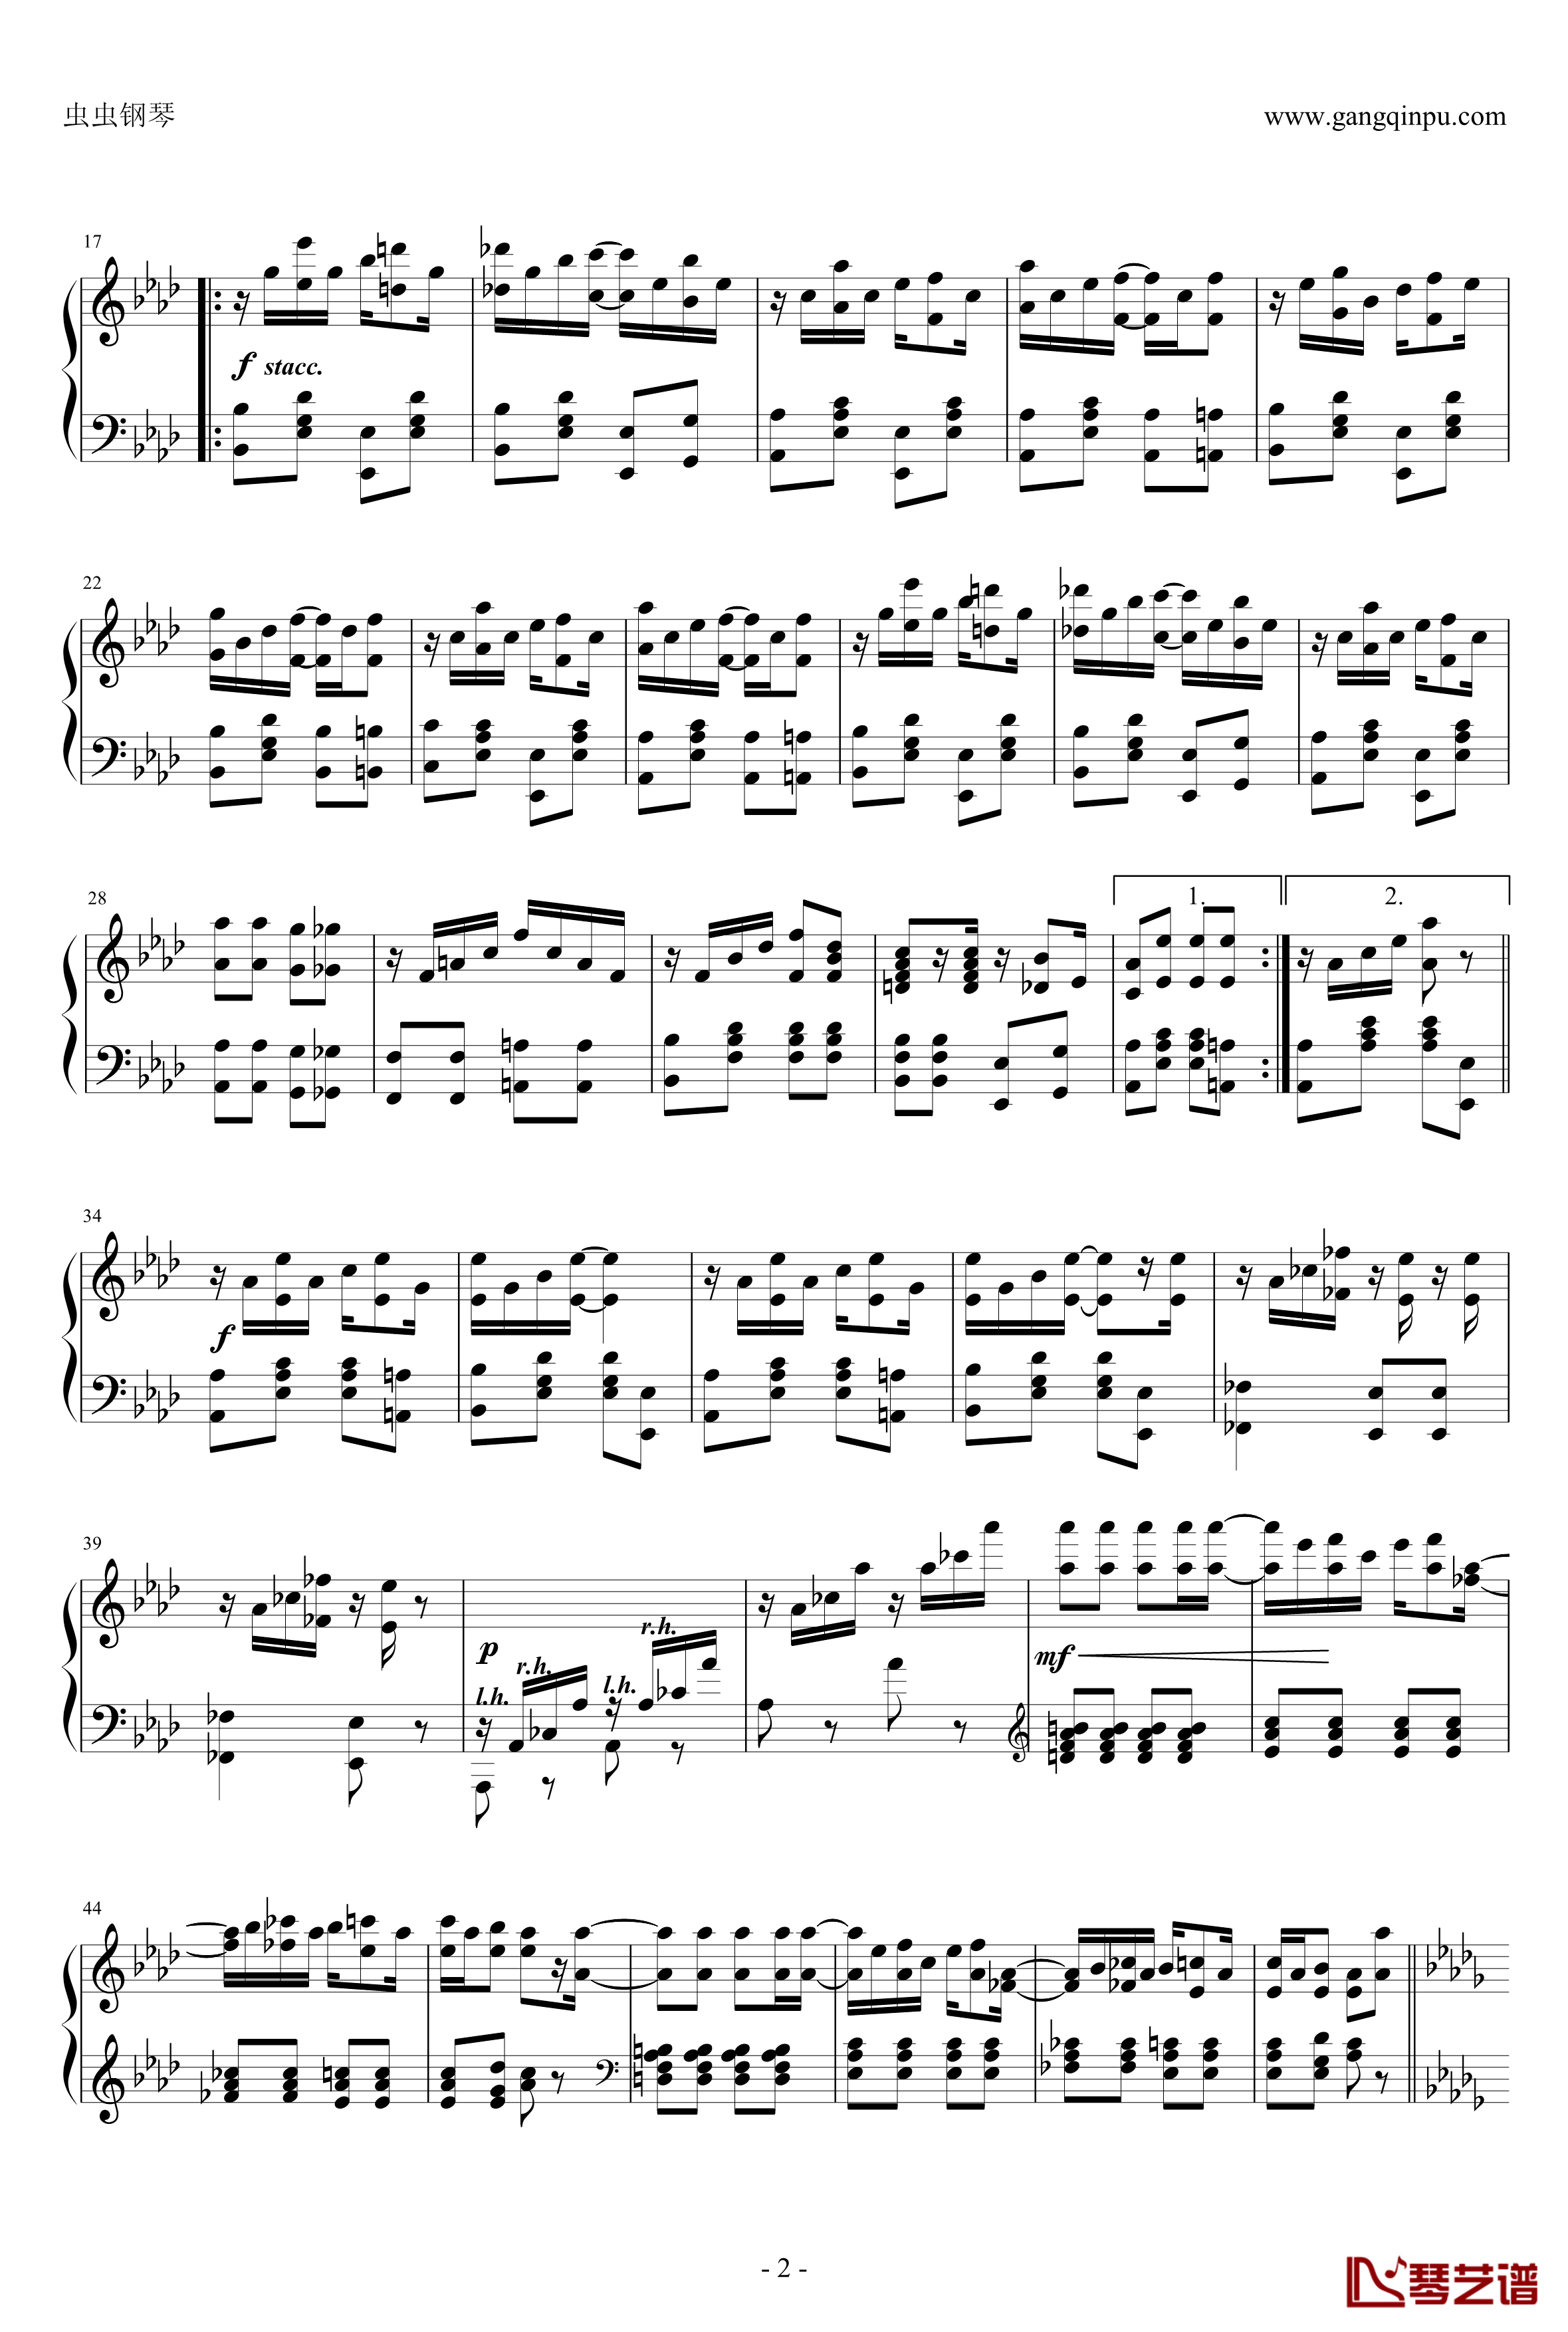 枫叶拉格钢琴谱-修订-斯科特 乔普林2